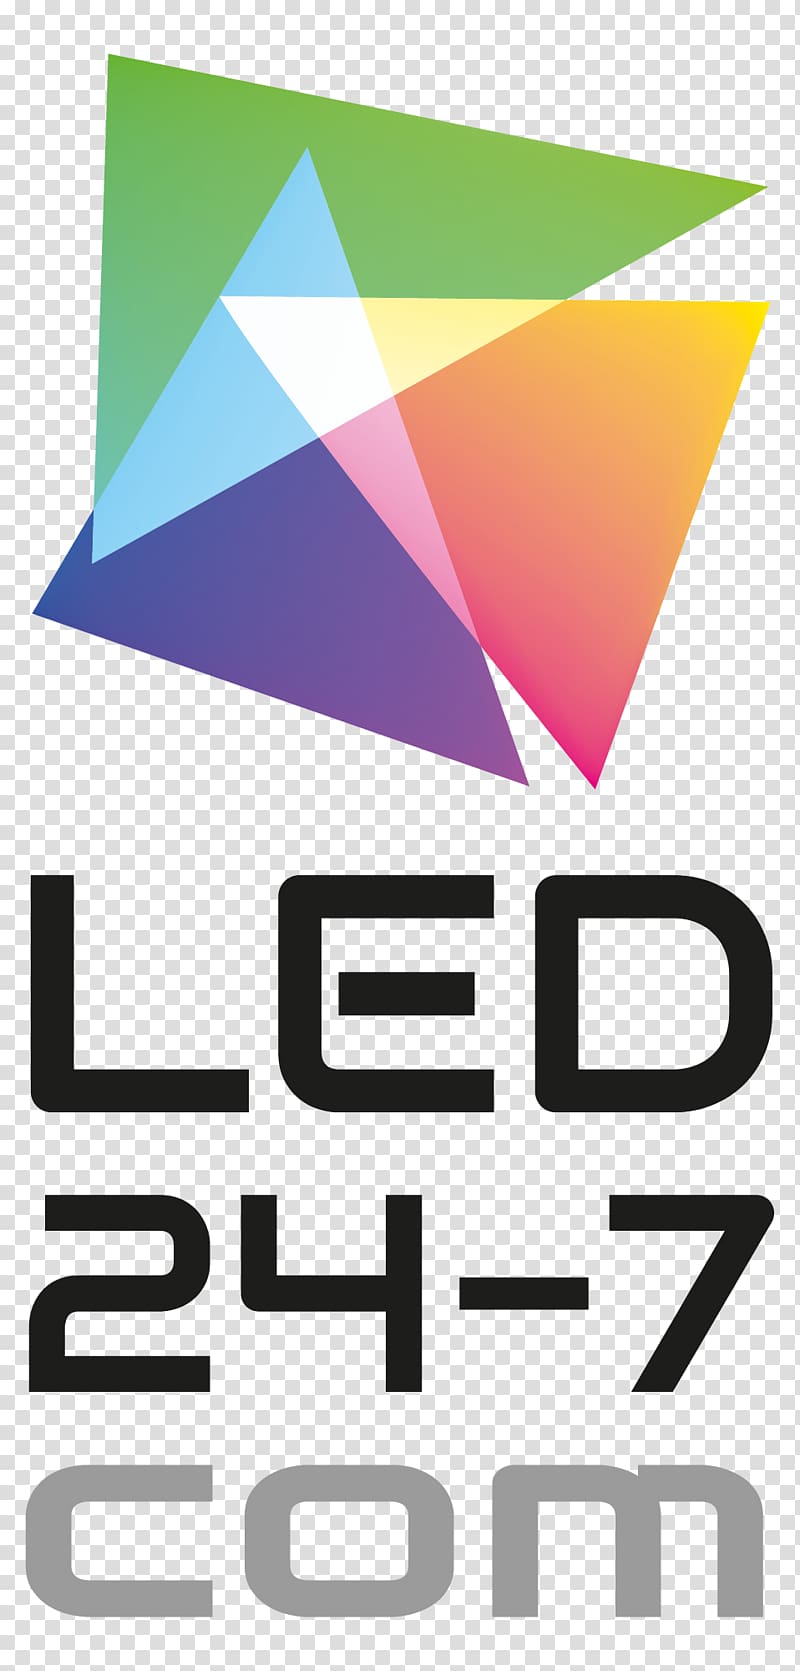 Signage Logo Digital Signs Point of sale LED display, led zeppelin logo transparent background PNG clipart